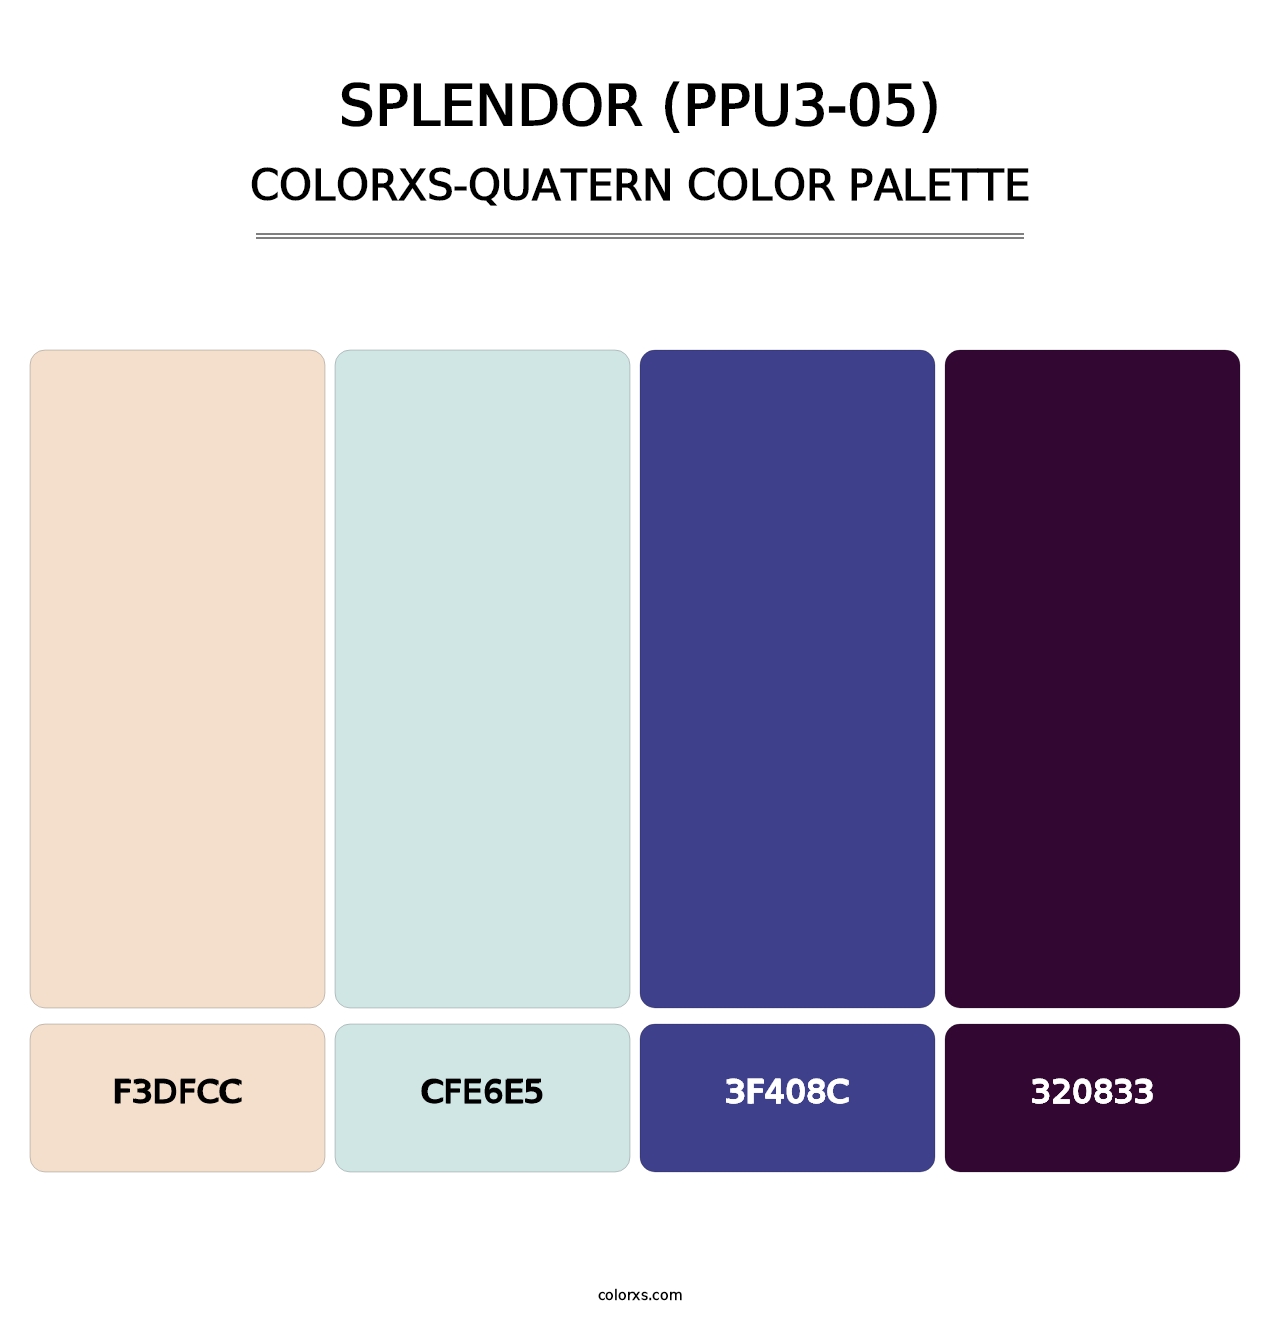 Splendor (PPU3-05) - Colorxs Quatern Palette